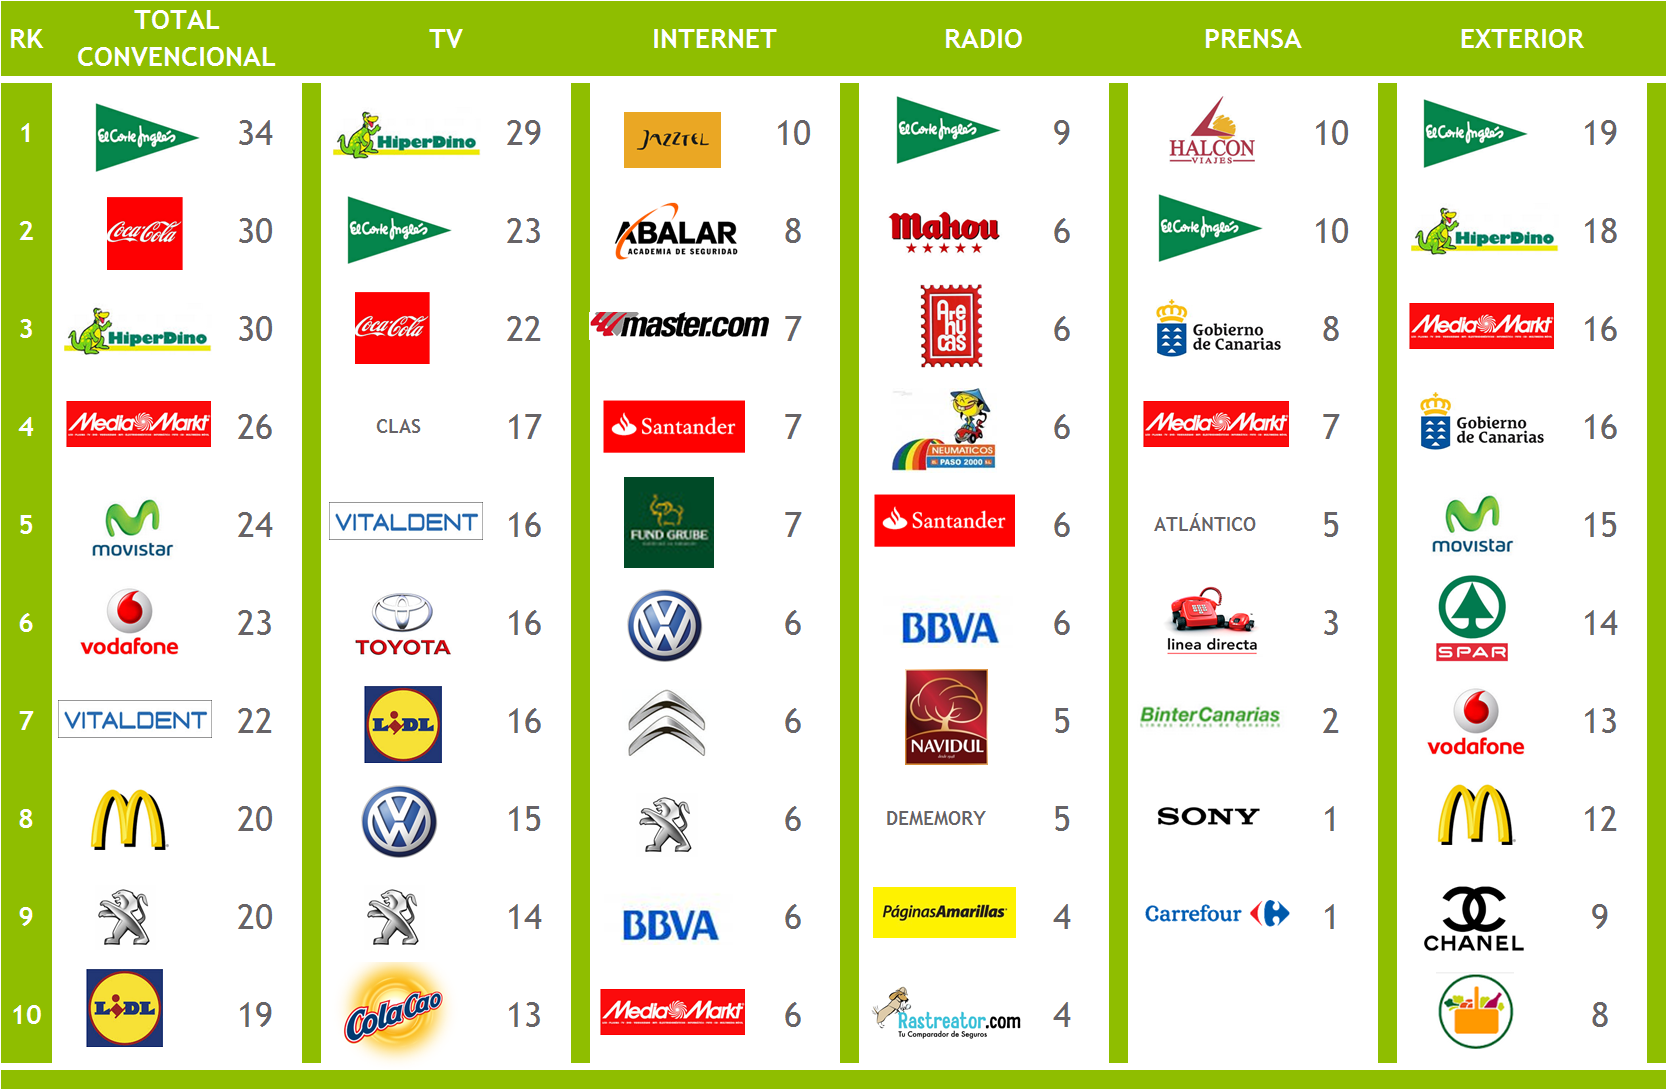 Ranking de Notoriedad de la semana Top Marcas total y por medios El Corte Inglés (34%), Coca Cola (30%) e Hiperdino (30%) fueron las marcas con mayor notoriedad de la semana 7.